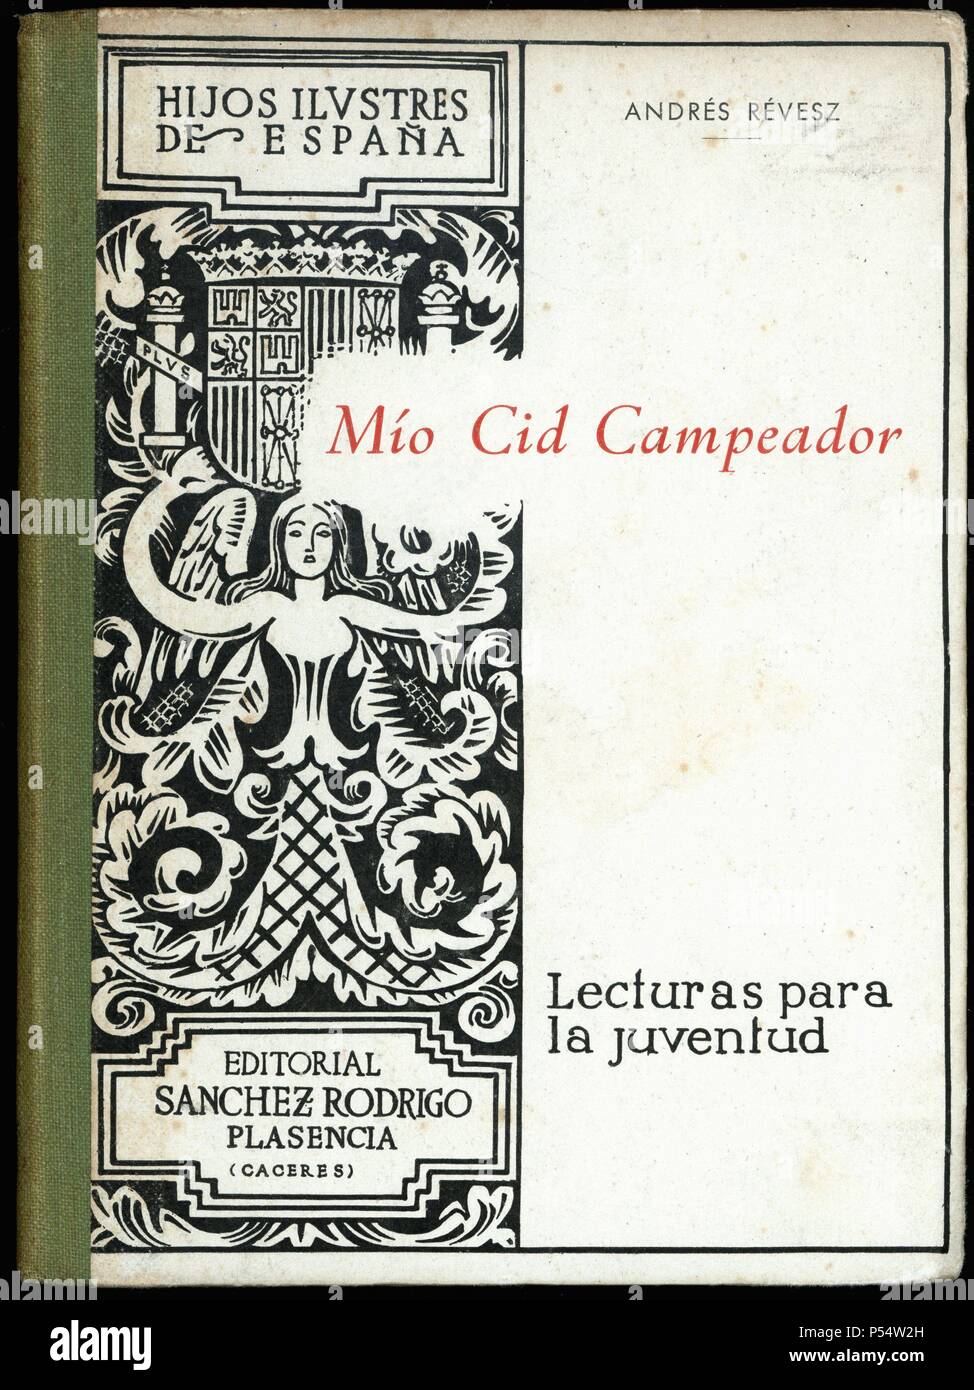 Libro escolar Mio Cid Campeador, de Andrés Révesz. Editado en Plasencia, 1942. Foto Stock